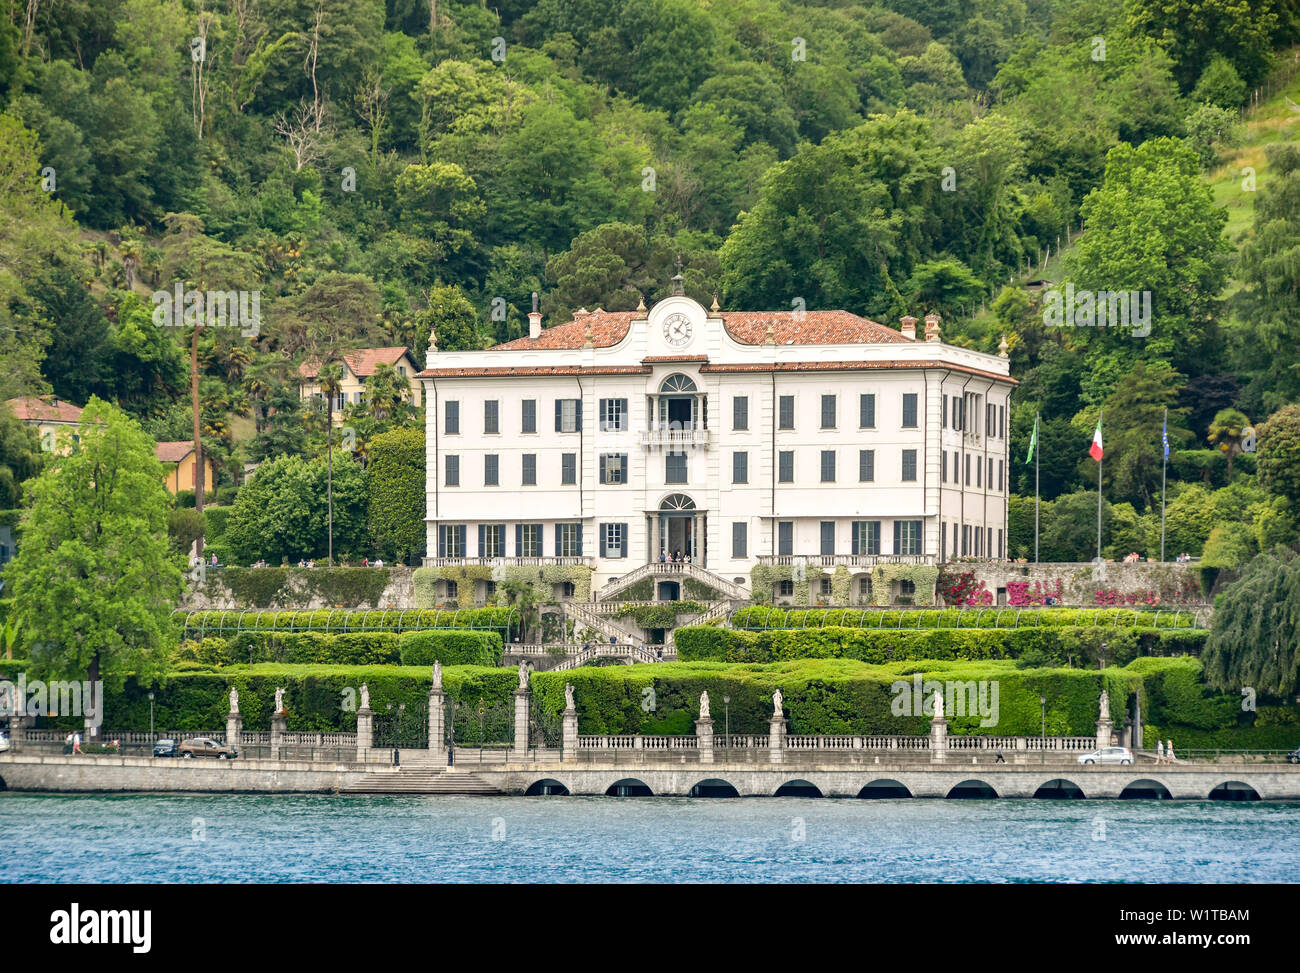 TREMEZZO, LAKE COMO, ITALY - JUNE 2019: Exterior view of the front of the Villa Carlotta in Tremezzo on Lake Como. Stock Photo